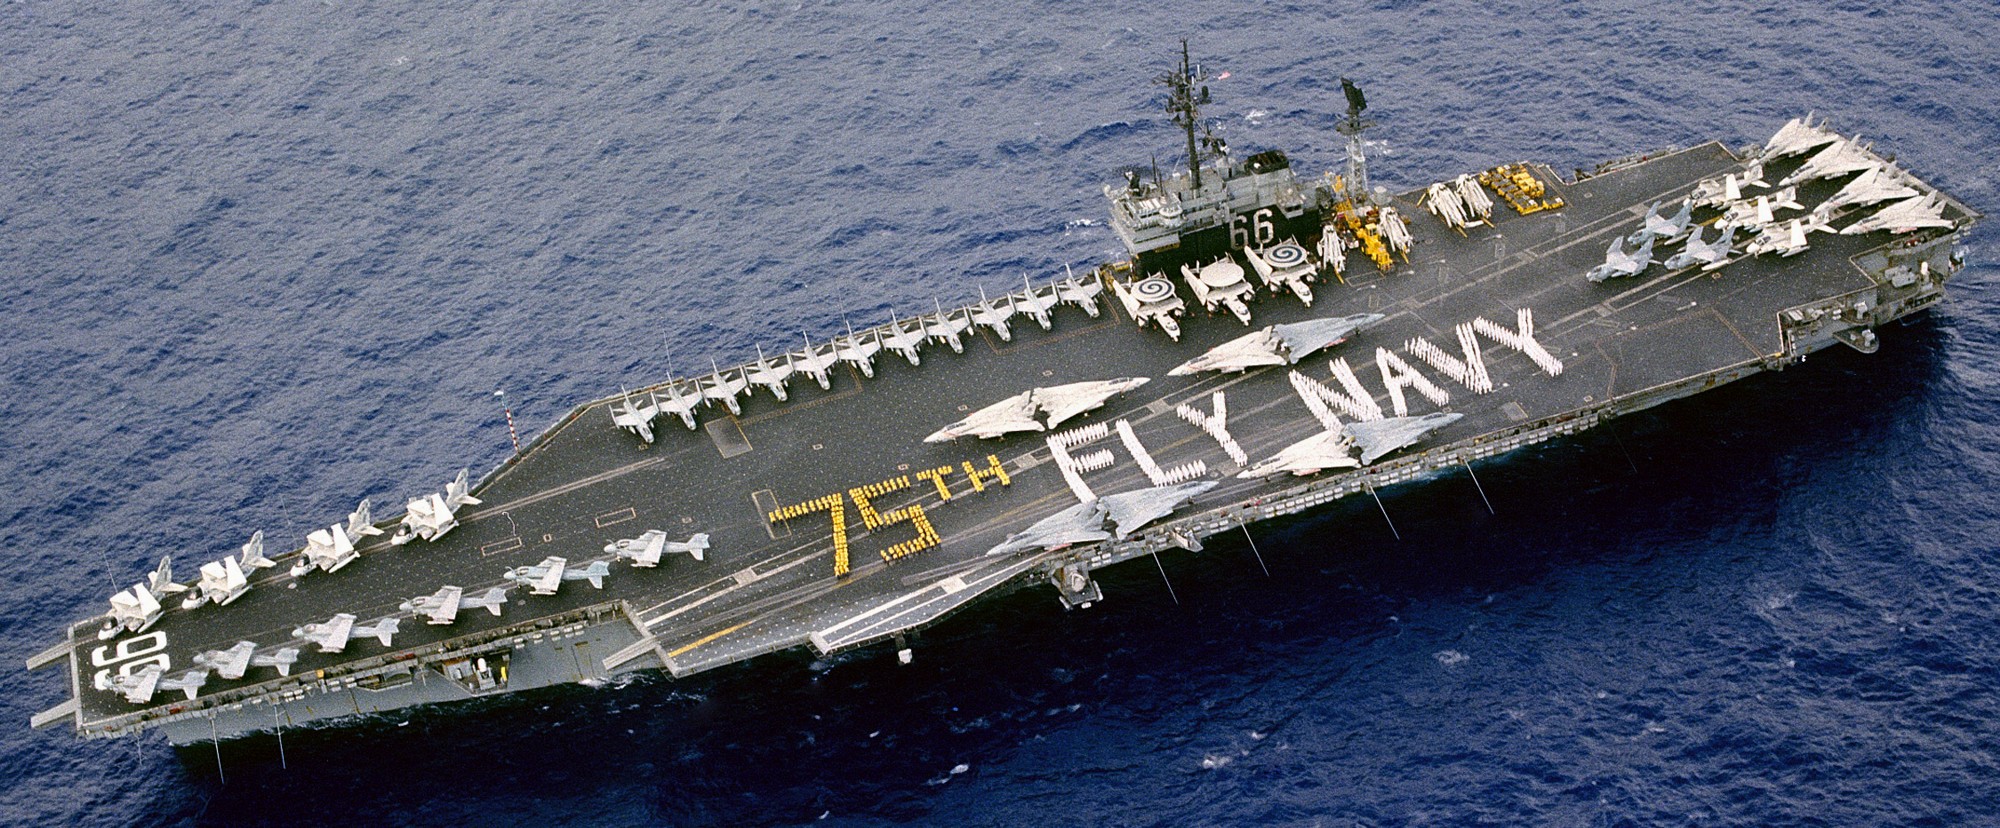 cv-66 uss america kitty hawk class aircraft carrier air wing cvw-1 us navy fleetex 1986 91